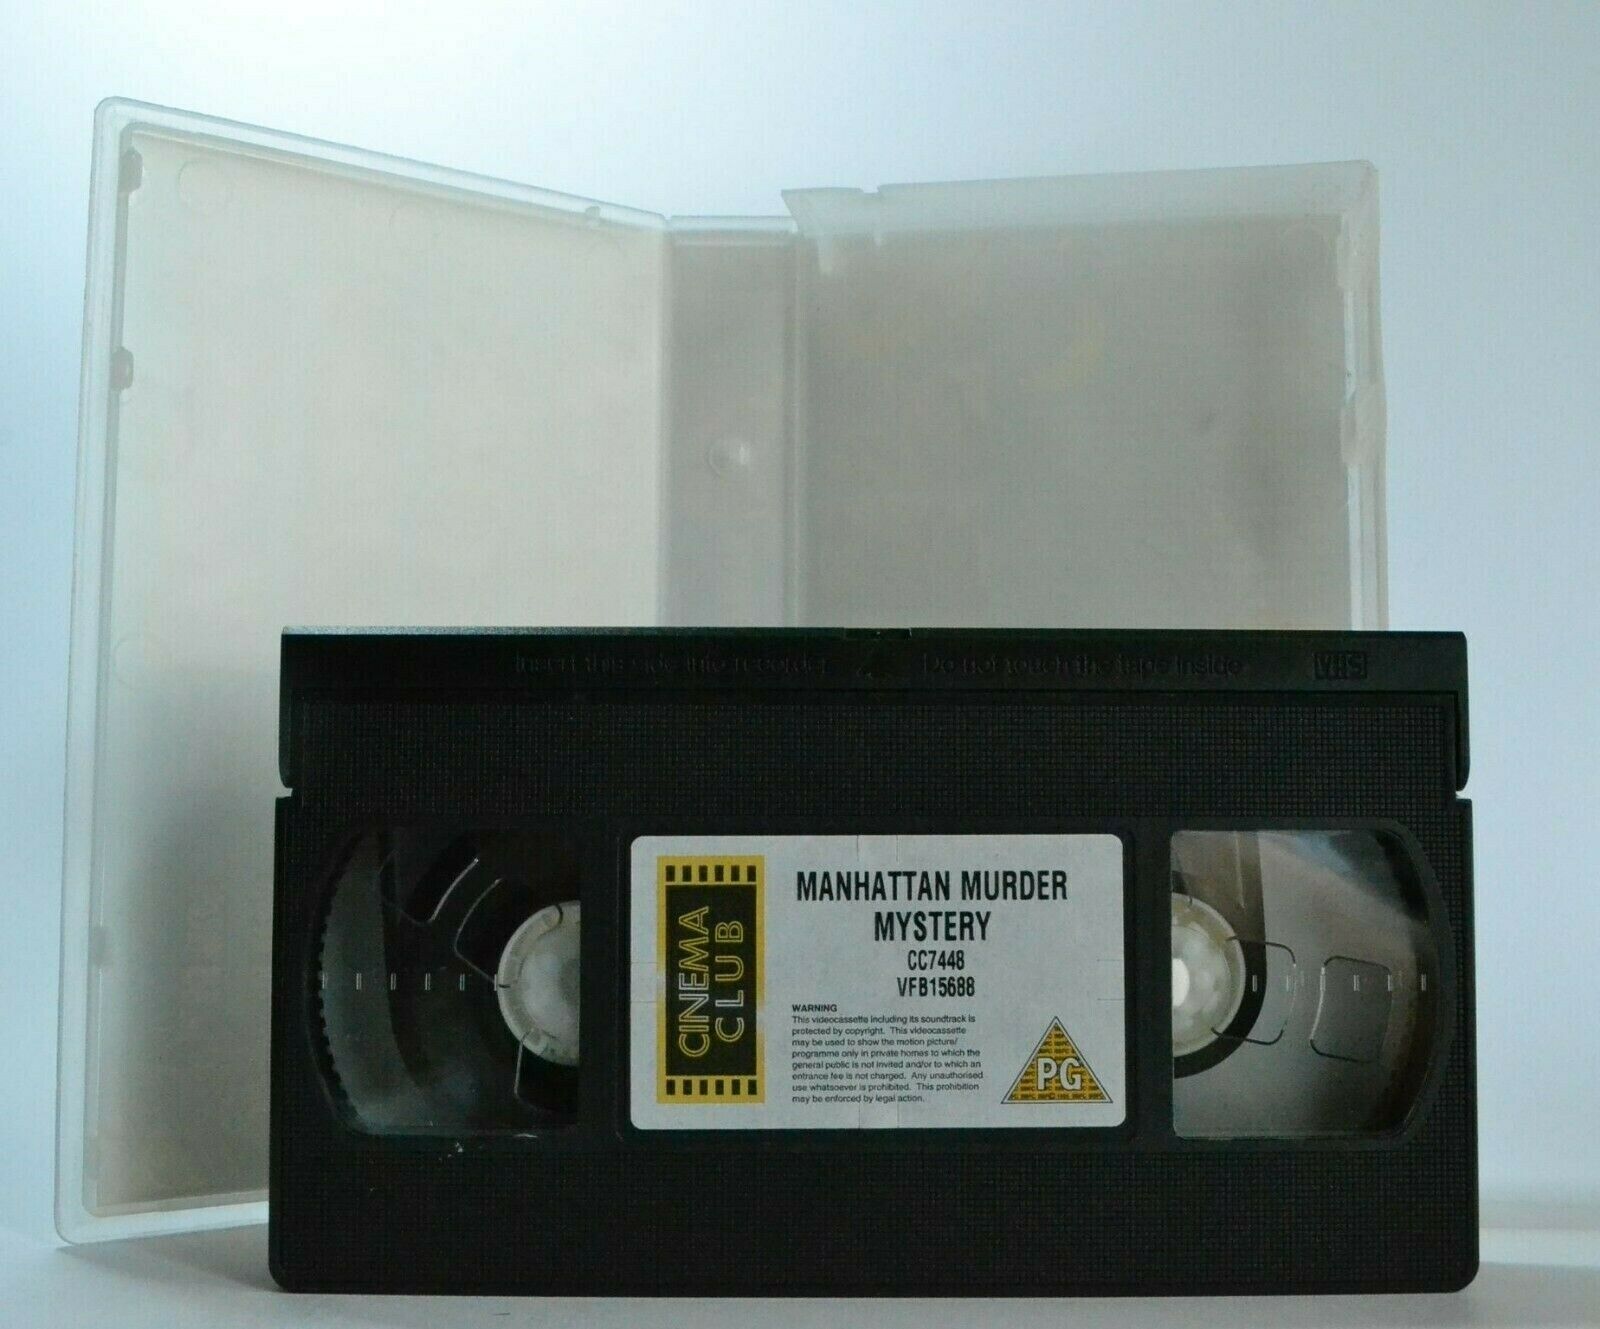 Manhattan Murder Mystery; Woody Allen - Comedy Thriller - Diane Keaton - Pal VHS-